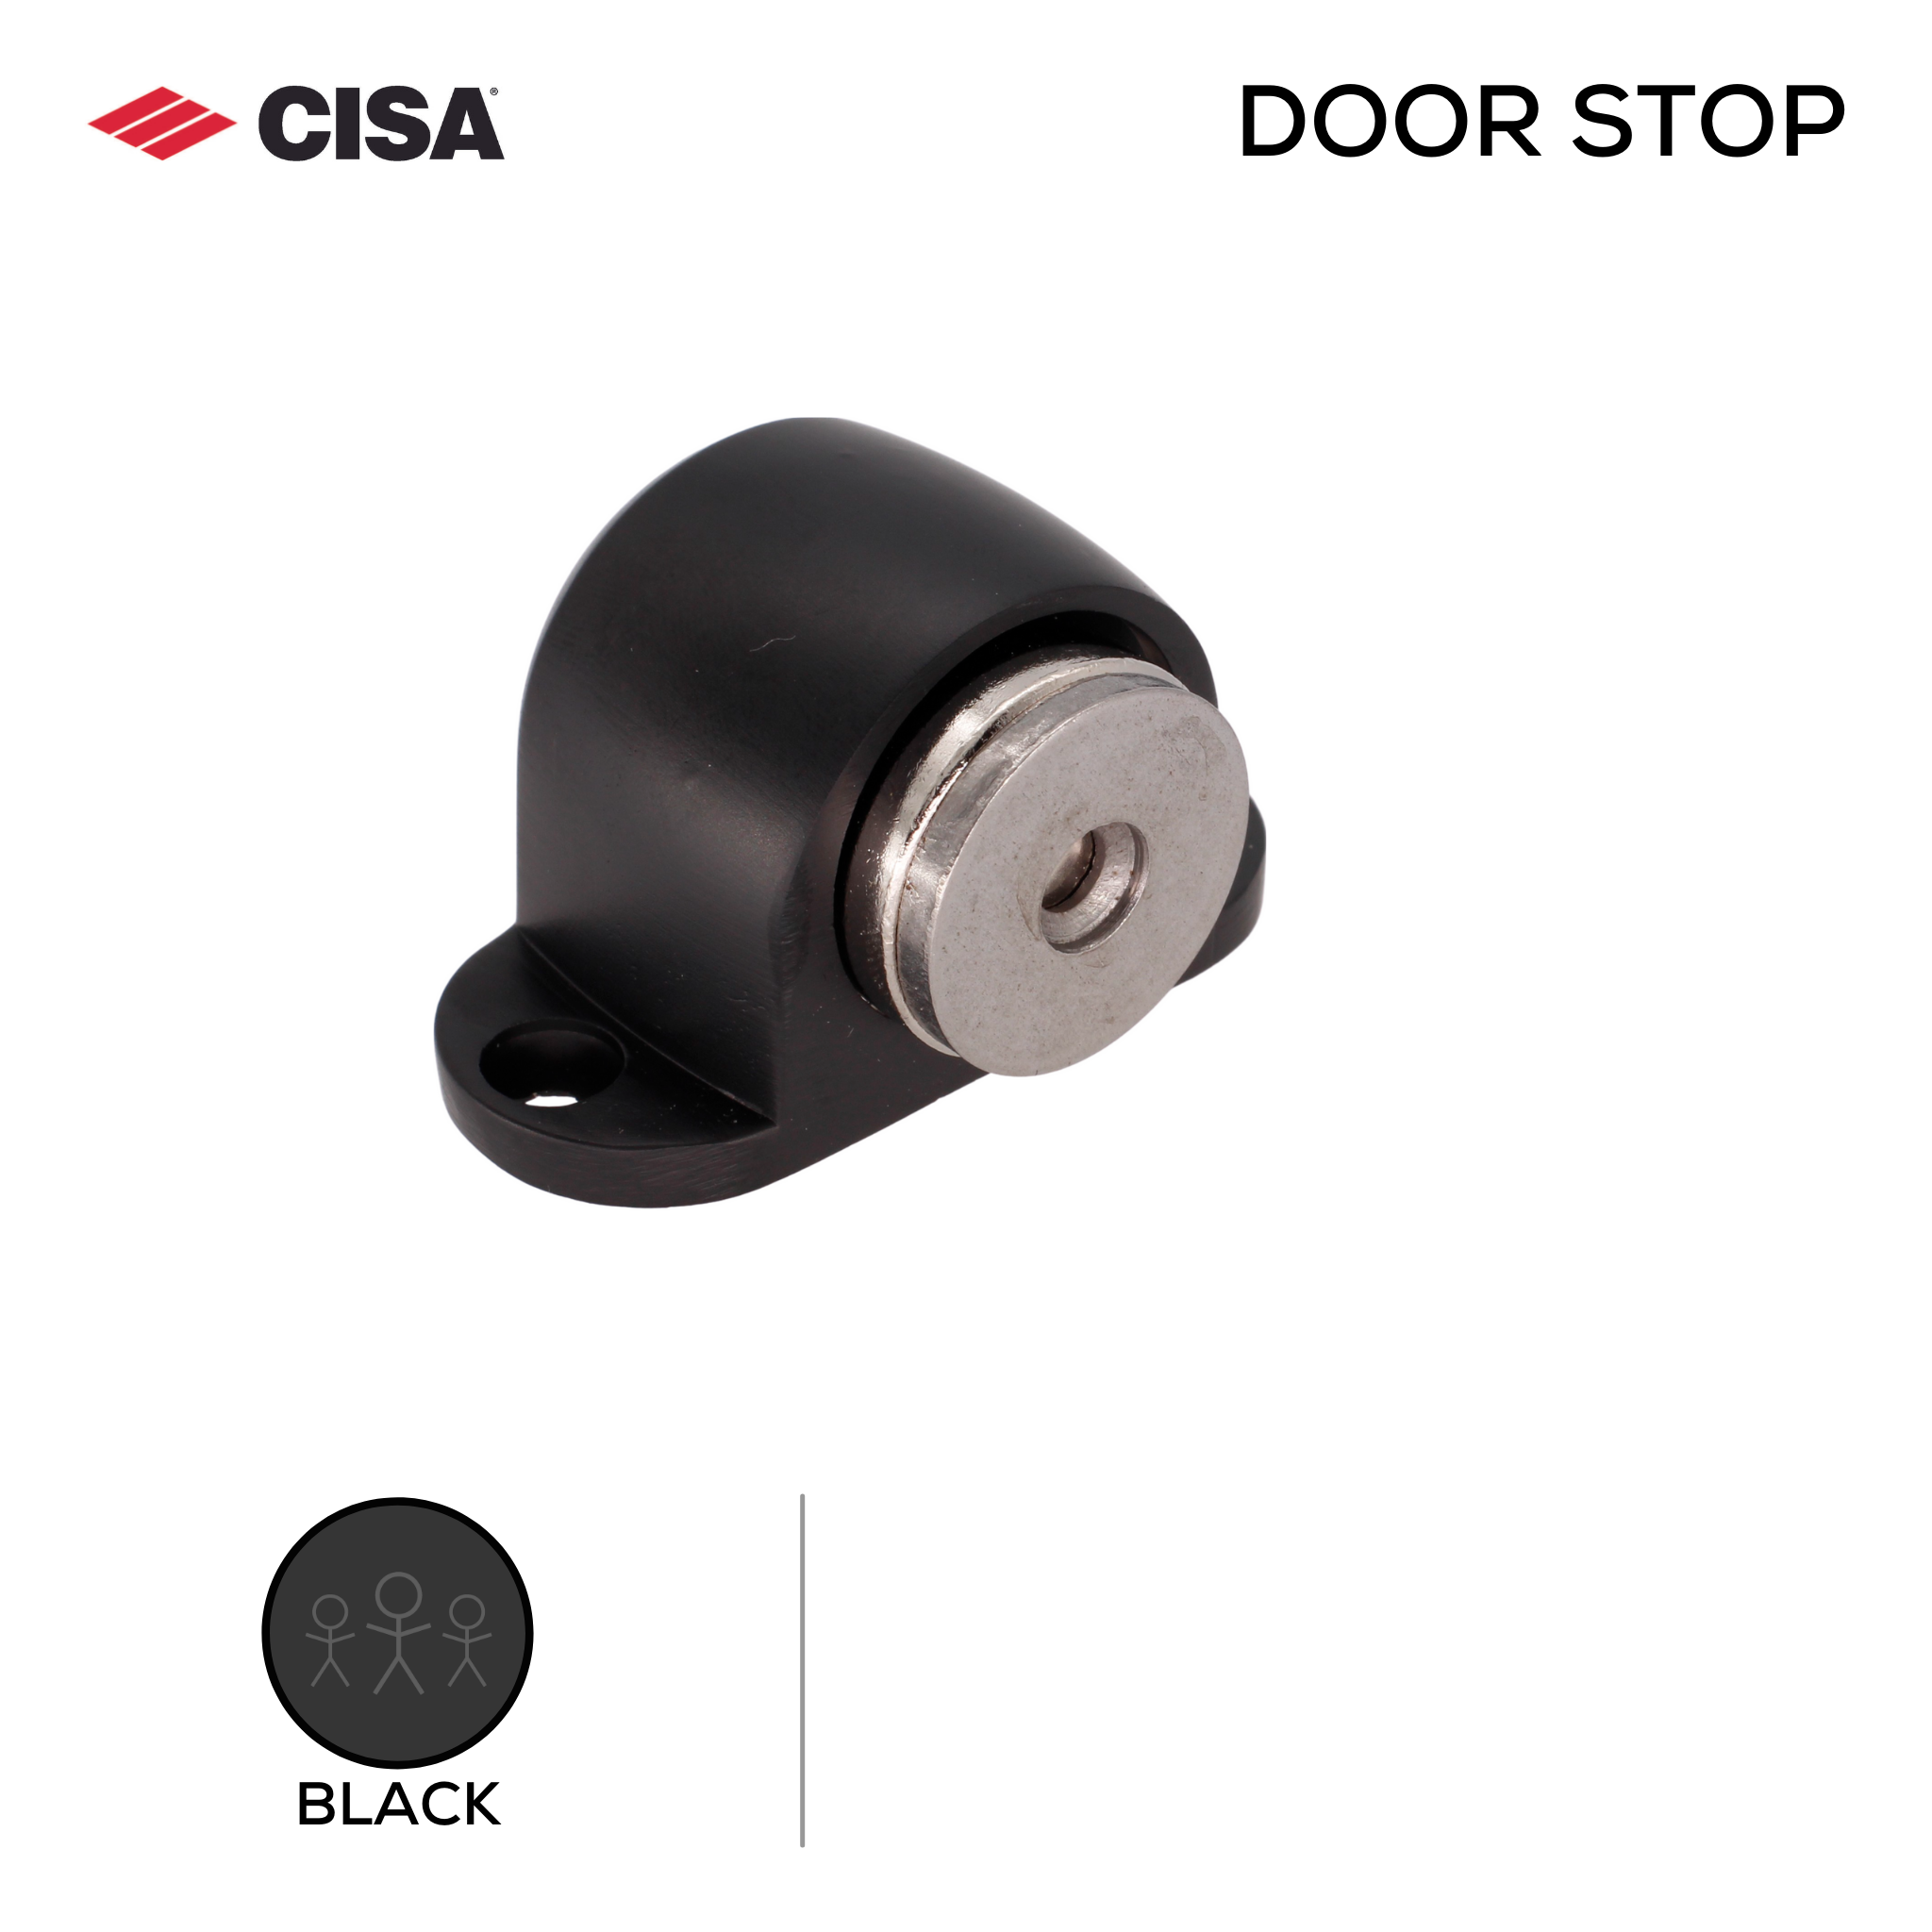 FMDS02.BL, Door Stop, Floor Mounted, Magnetic, 38mm (l) x 55mm (w), Black, CISA